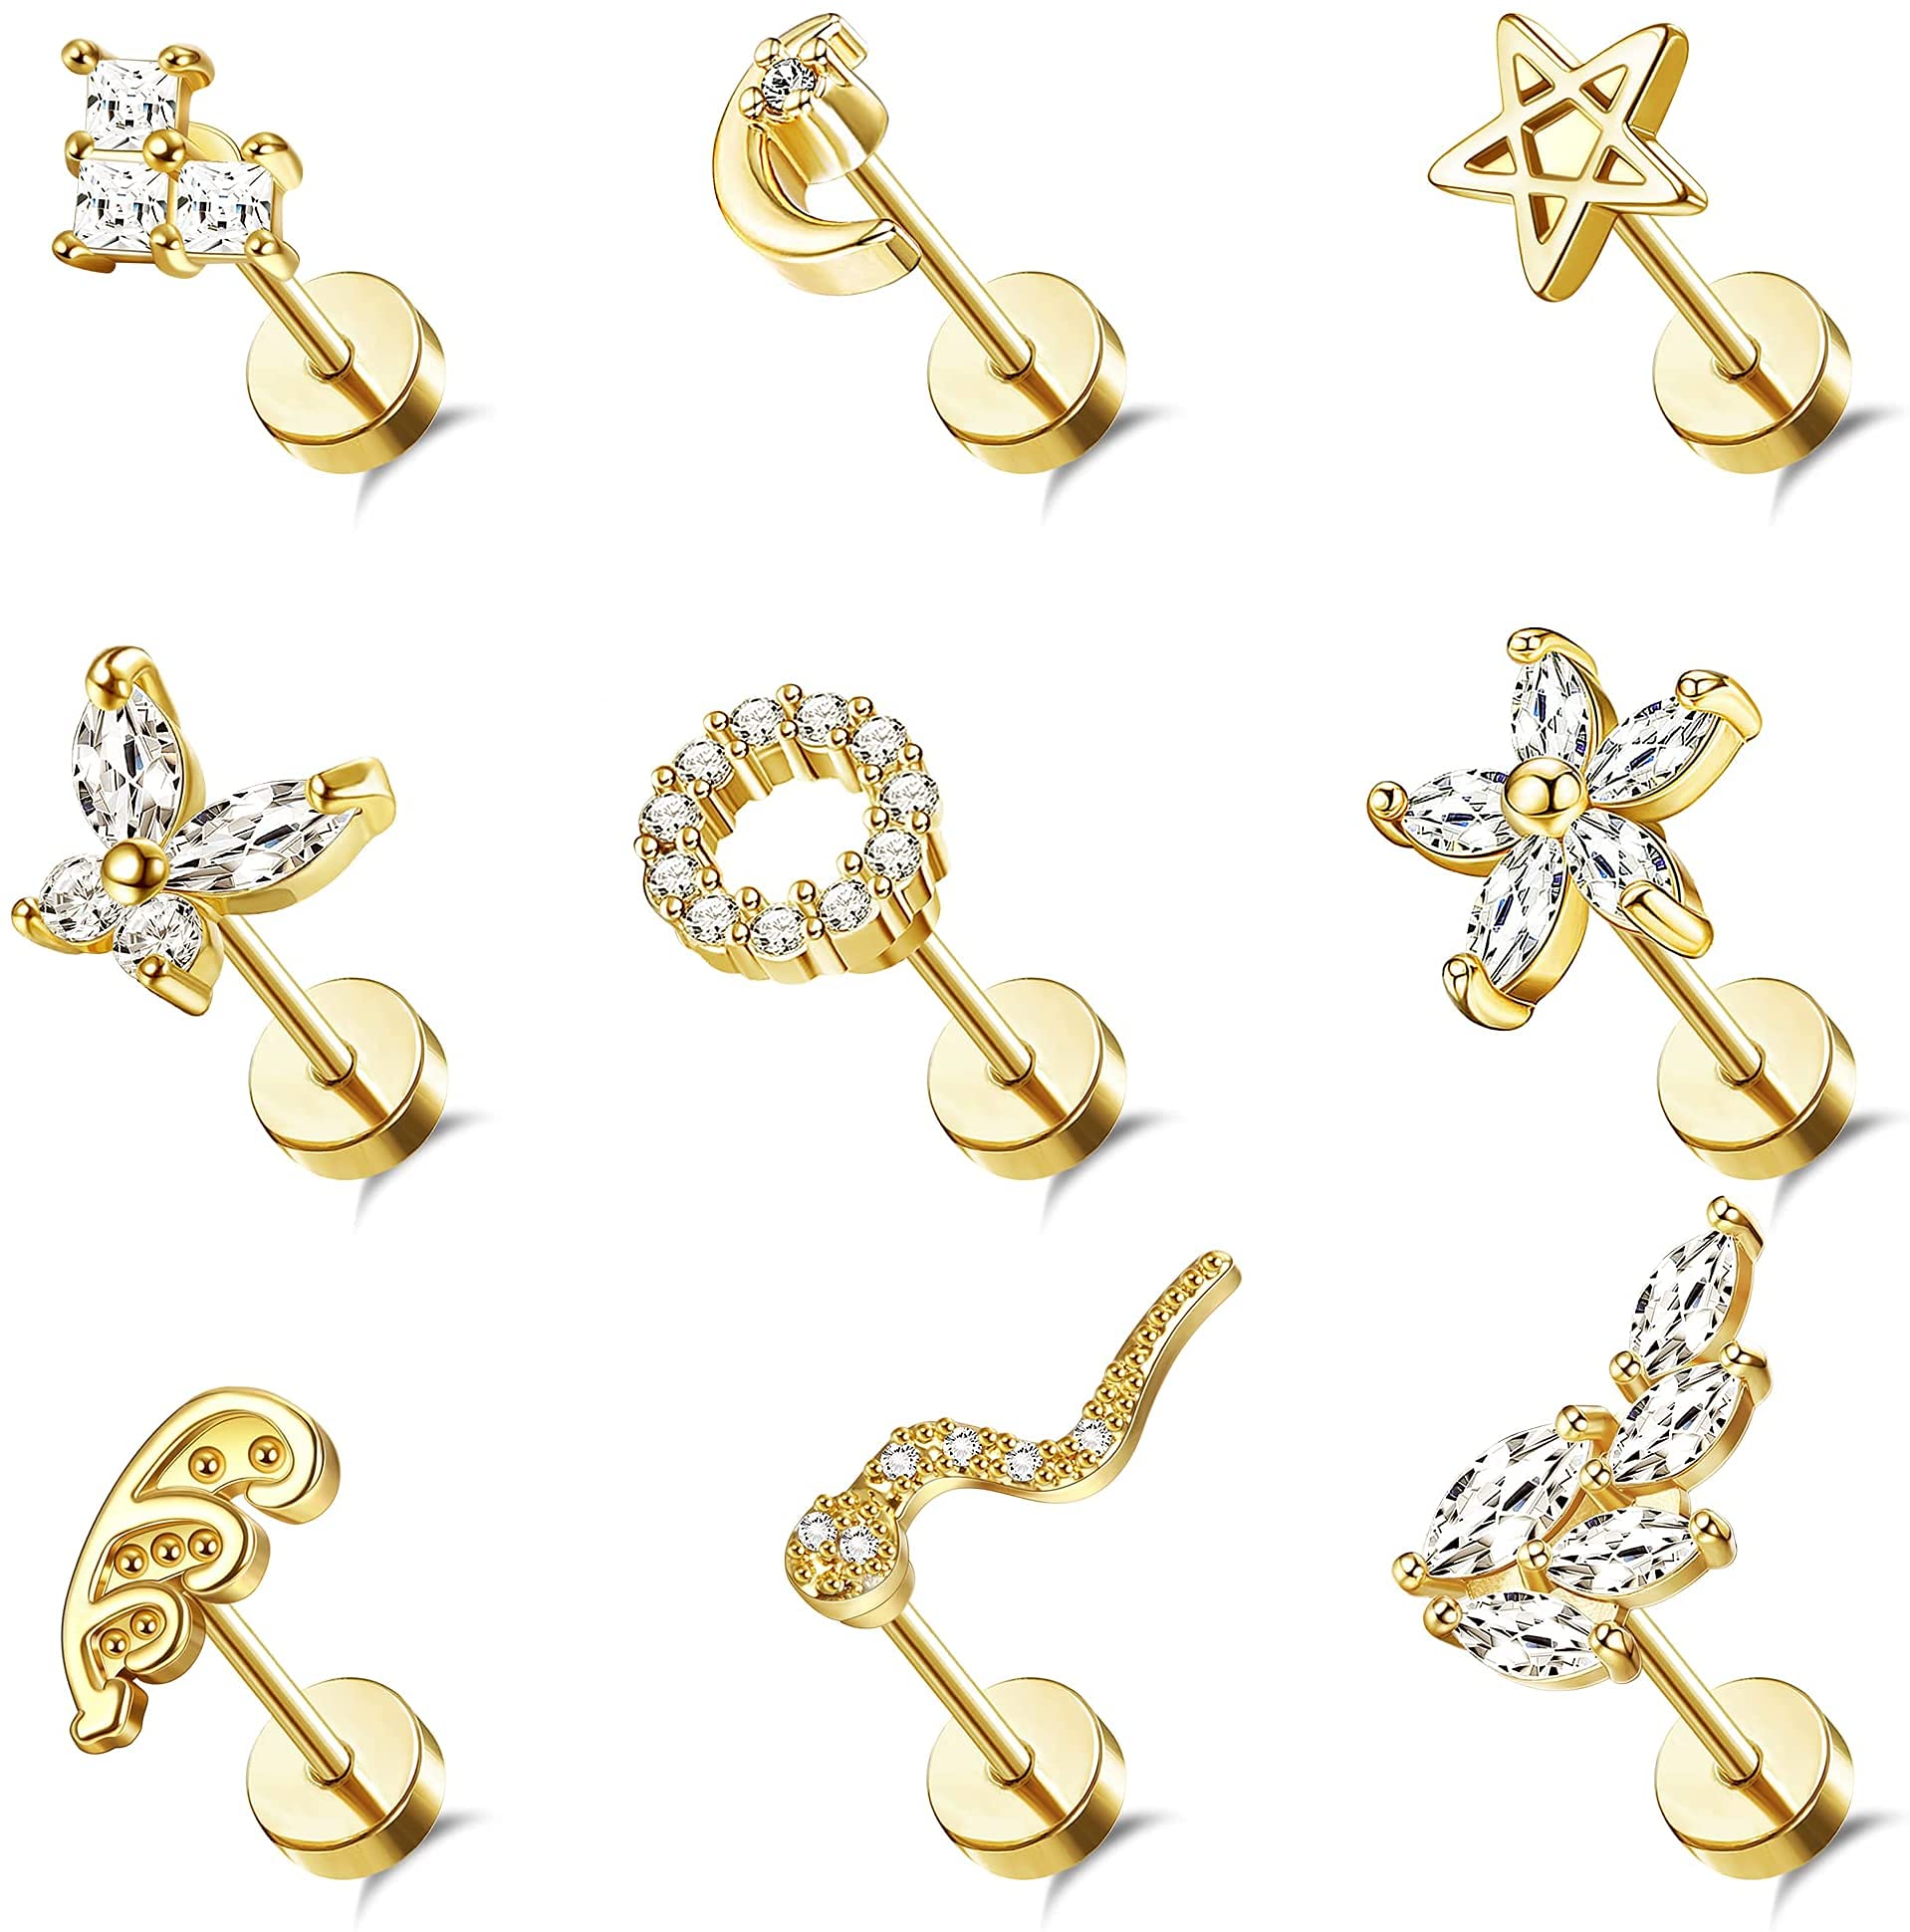 MJust 9pcs Flatback Earrings Stainless Steel Cartilage Earrings Stud for Women 20g Flat Back Stud Earrings for Mutiple Piercing Heart Butterfly Ball